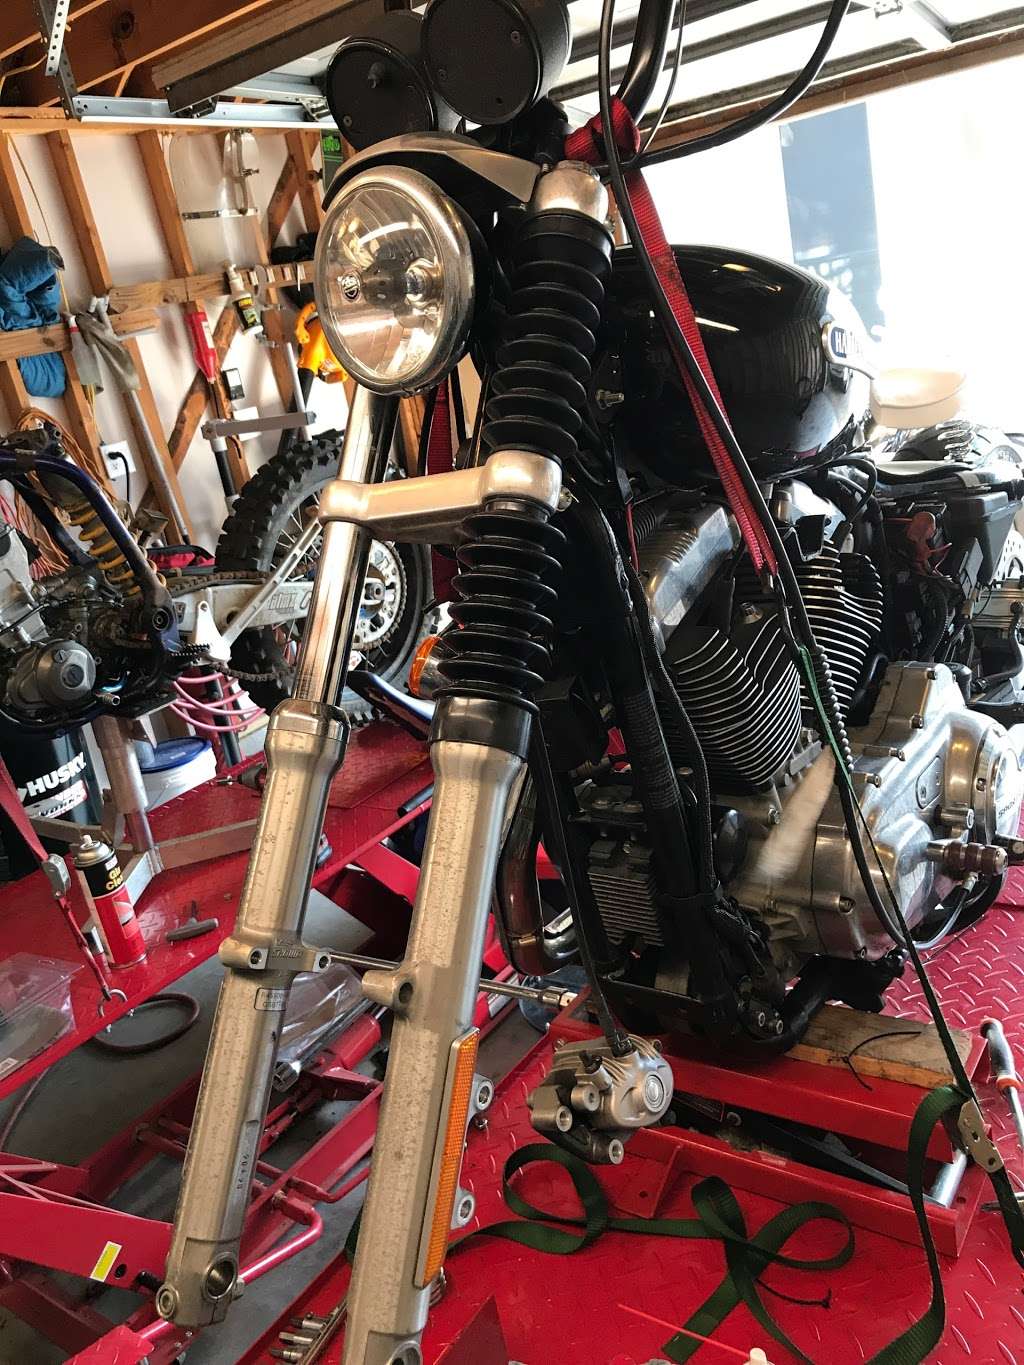 Martys Racing Motorcycle Repair | 35407 State Highway 249, Pinehurst, Texas 77362 | Phone: (936) 697-0815